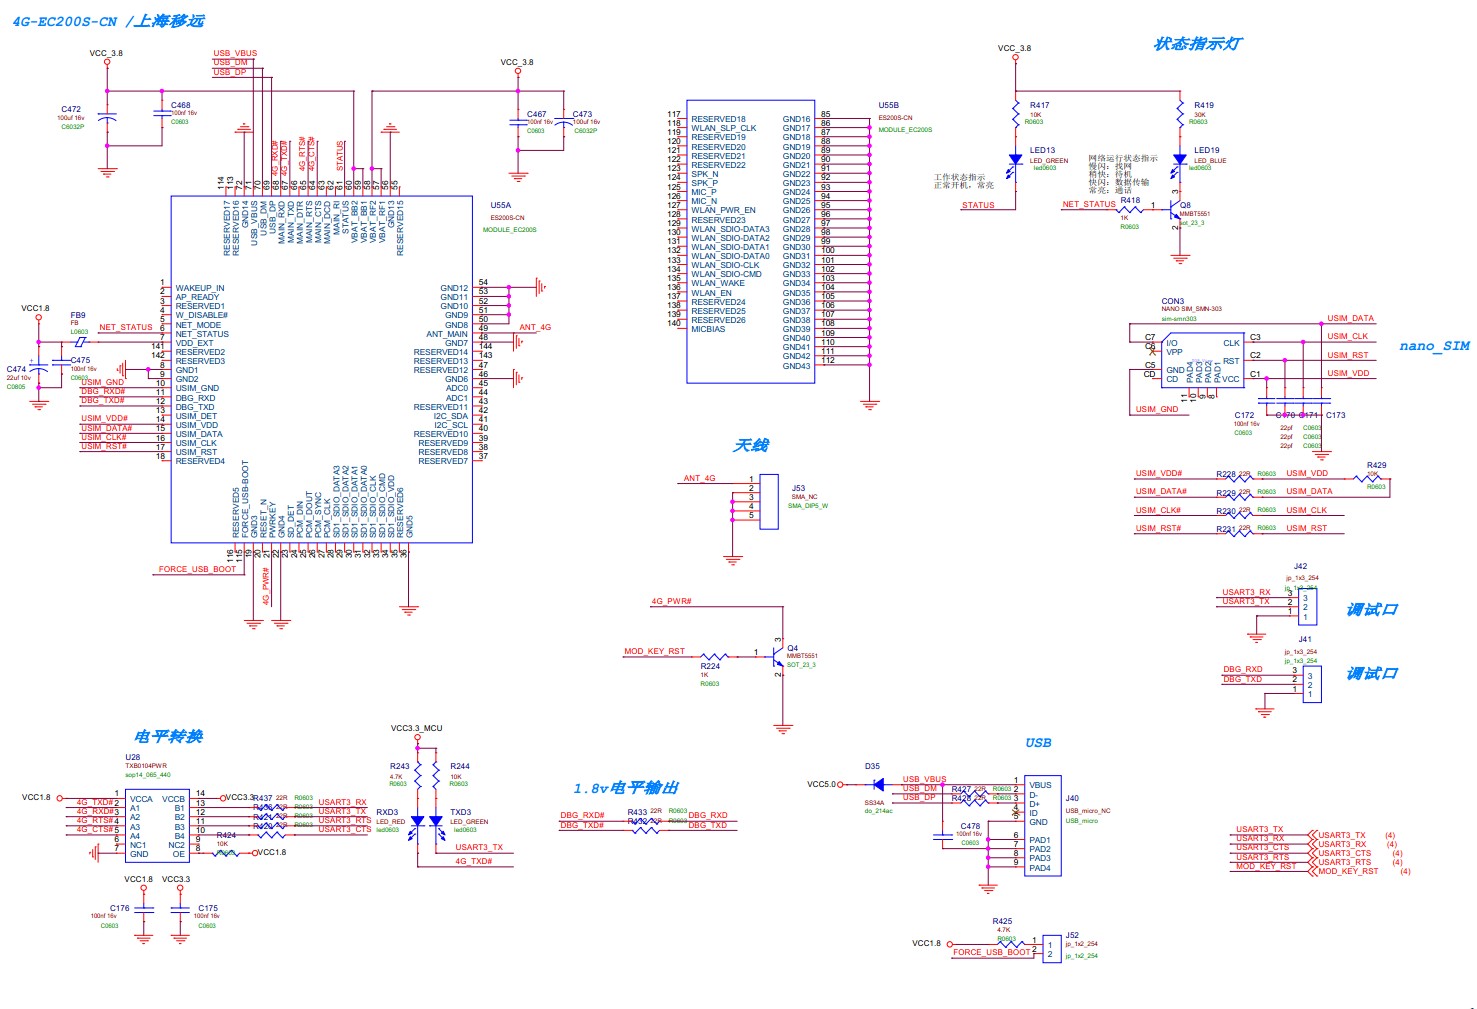 物联网开发板设计笔记 (2/7)__ 硬件原理图设计